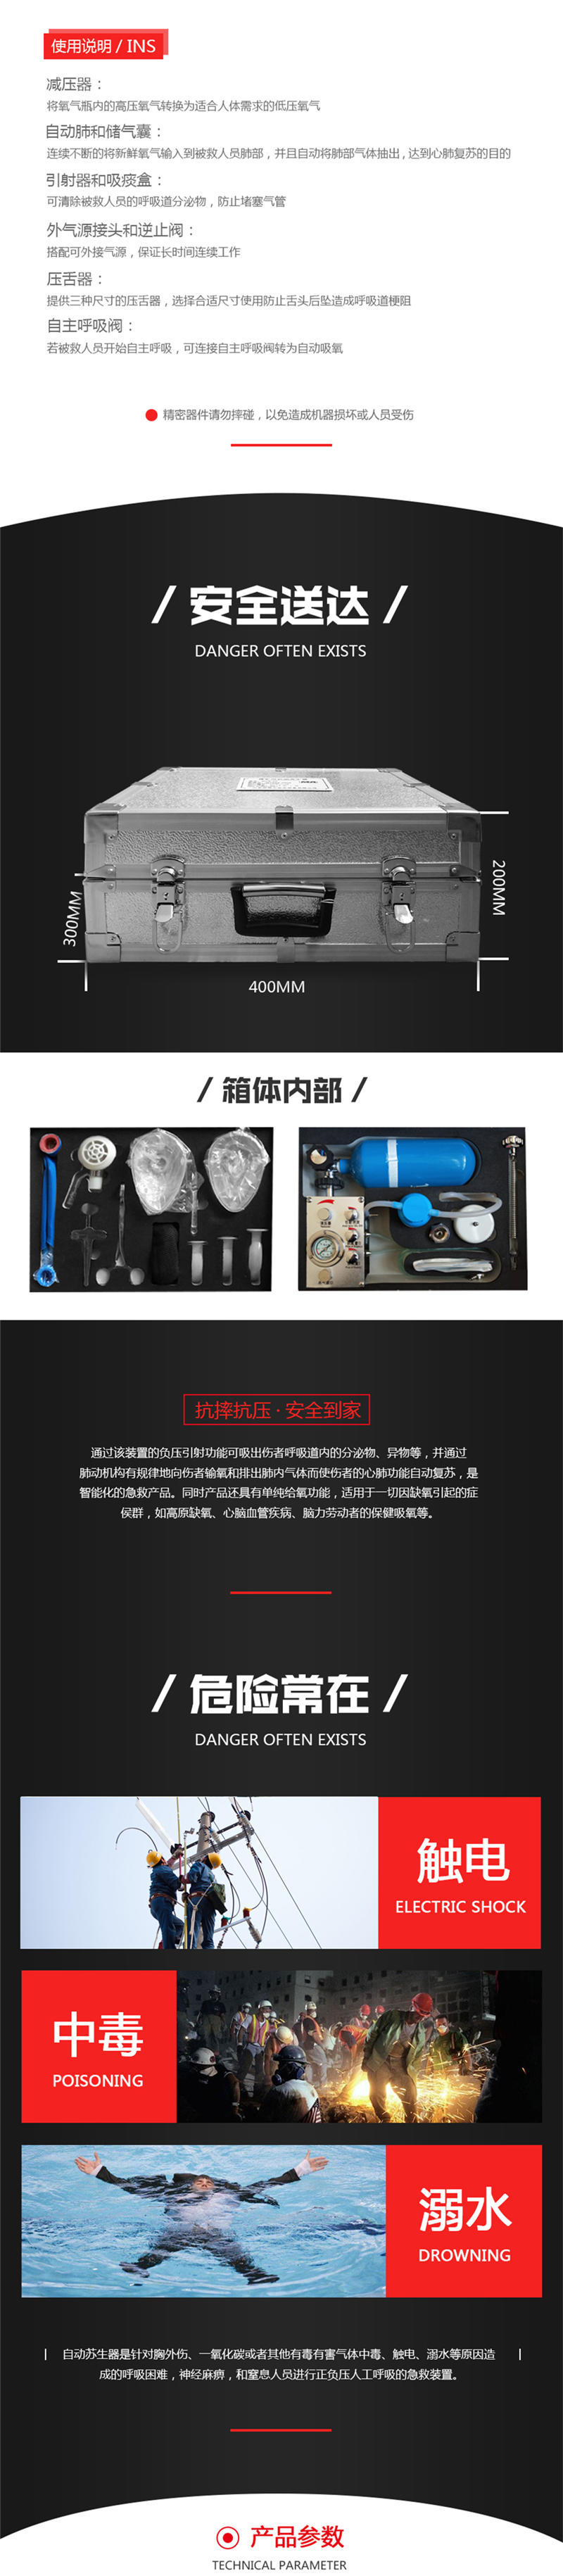 上海皓驹厂家 MZS-30 自动苏生器 便携式自动苏生器 医用自动苏生器示例图1